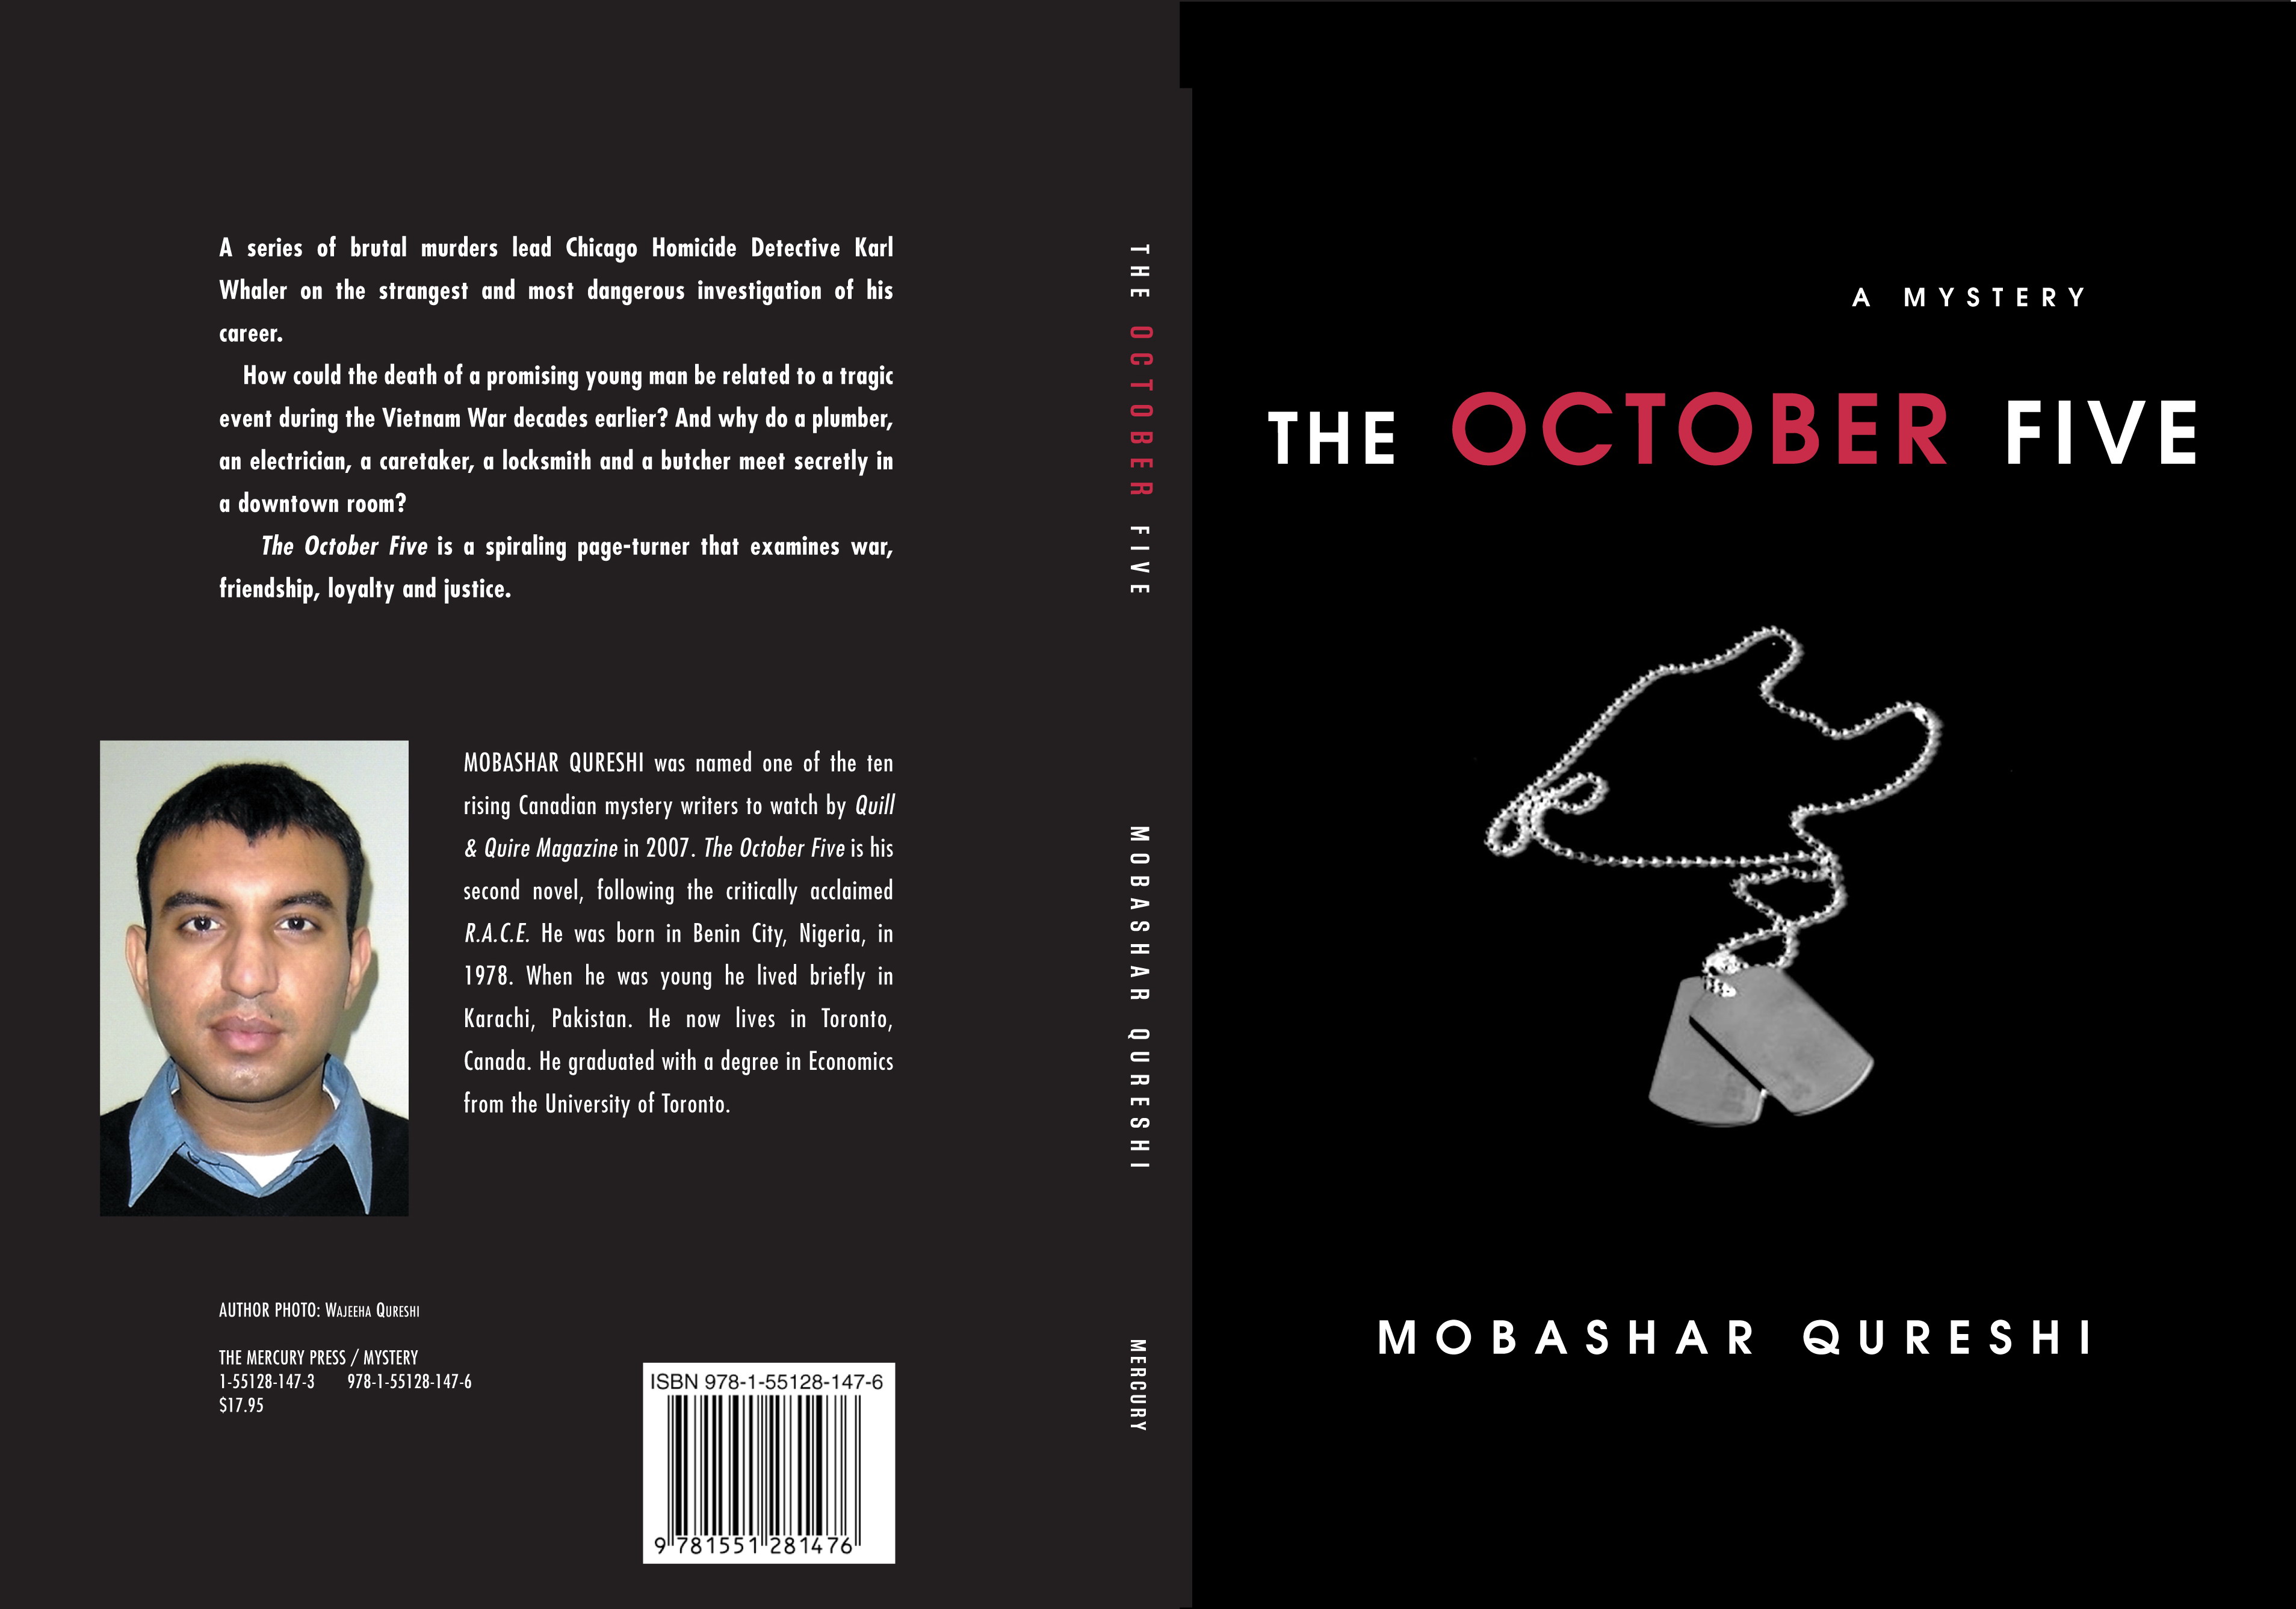 The October Five Mobashar Qureshi